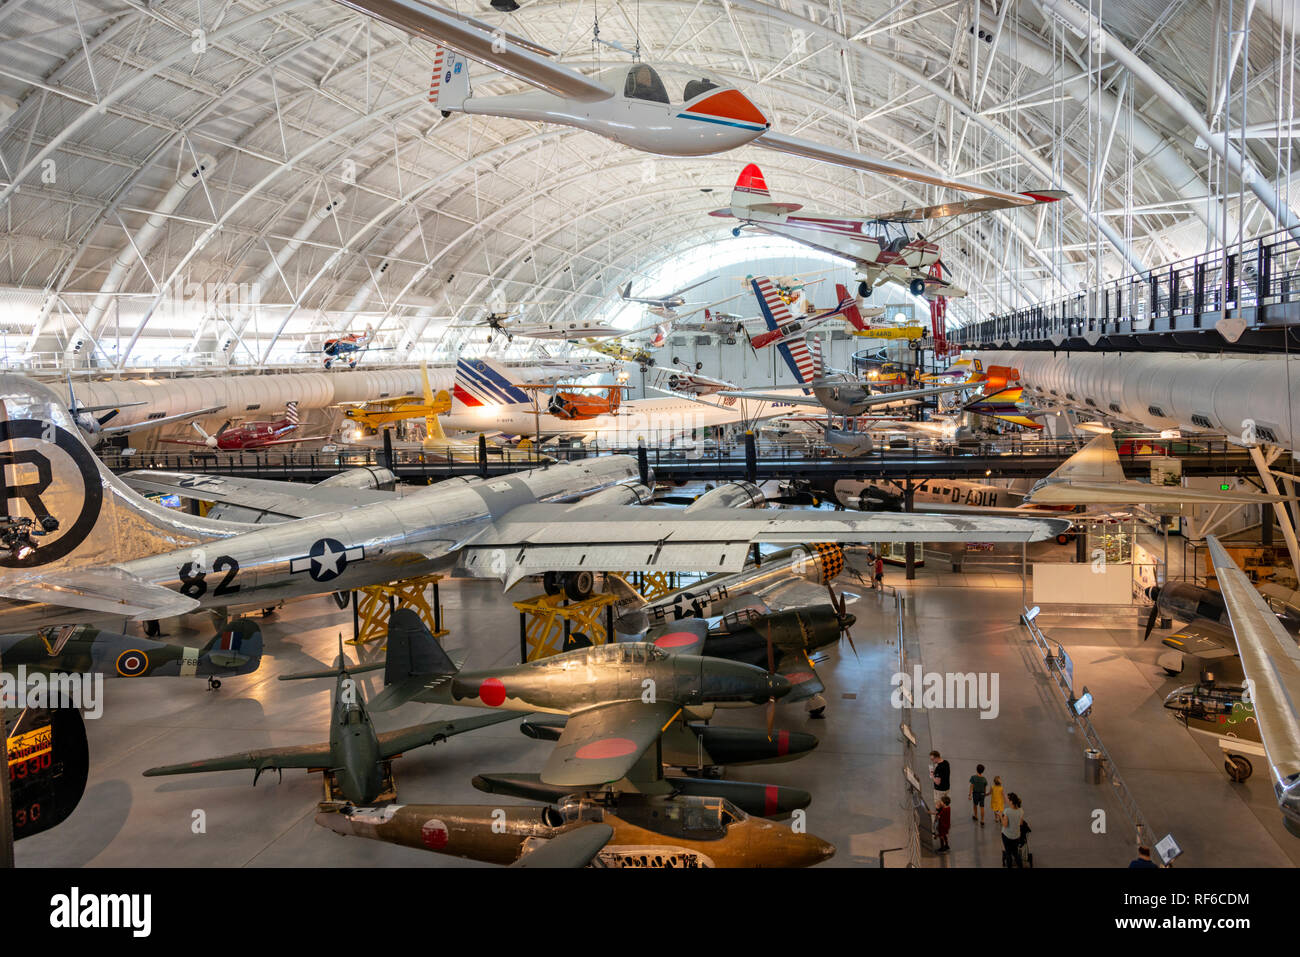 Ein Blick auf die zahlreichen Flugzeuge, einschließlich der Enola Gay, in der Boeing Aviation Kleiderbügel, National Air und Space Museum Udvar-Hazy Center Stockfoto